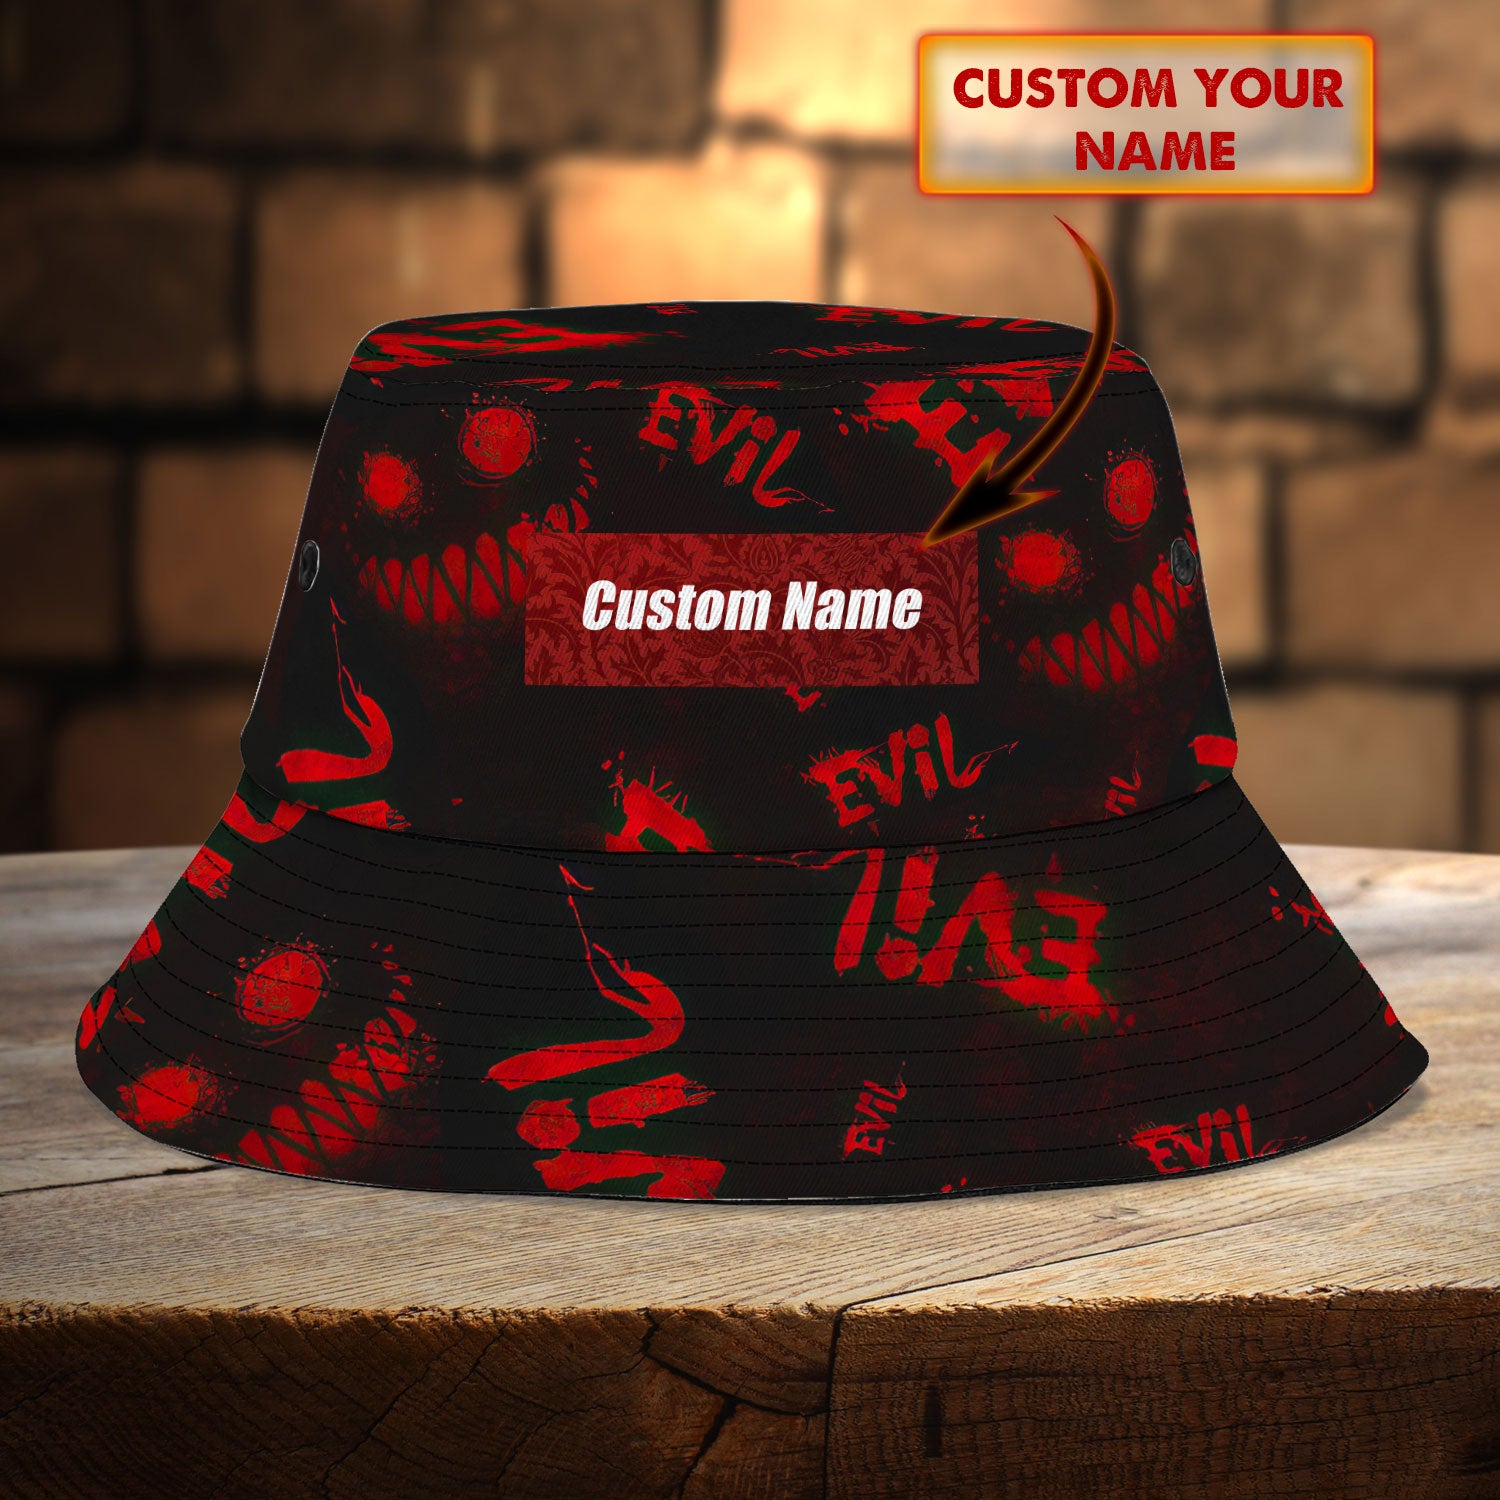 Custom Bucket Hat - Evil - Vhv-bucket-003